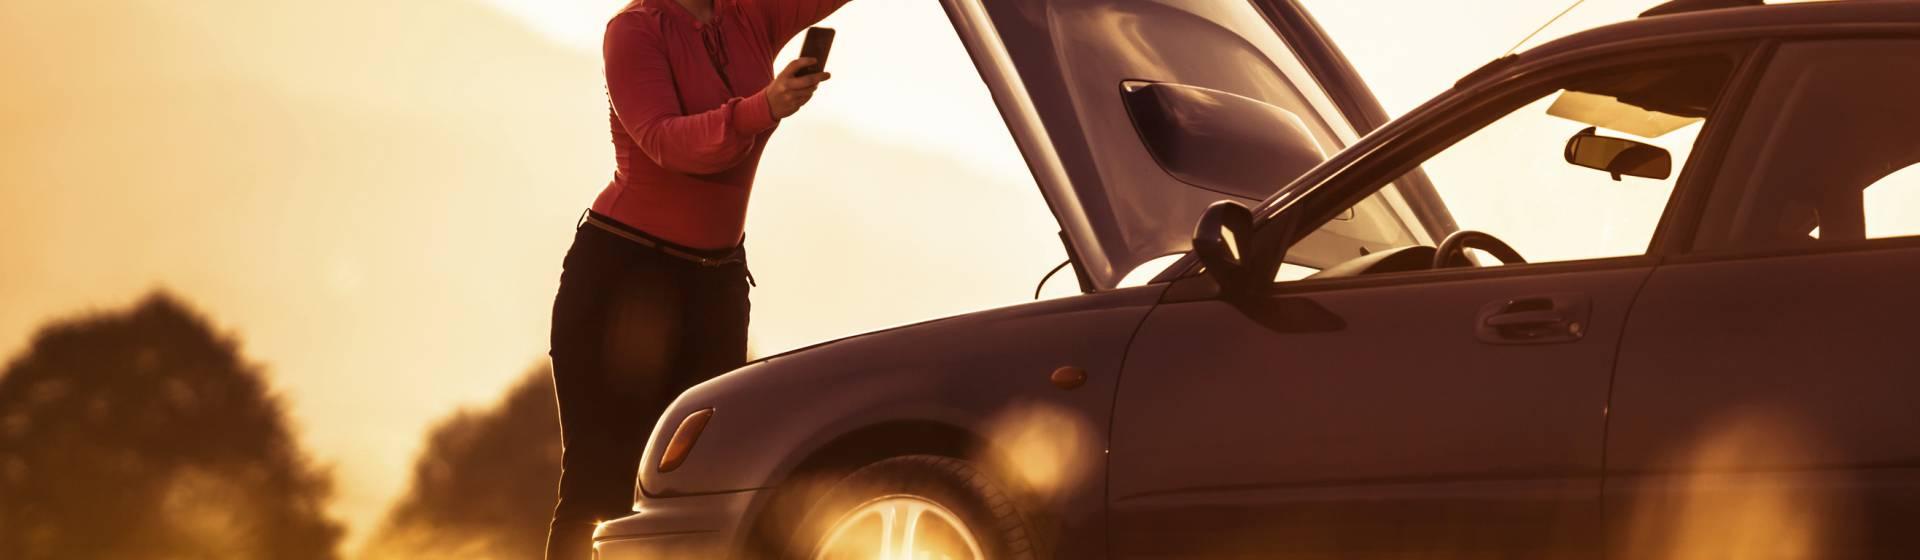 Femme au téléphone devant le capot ouvert de sa voiture en panne